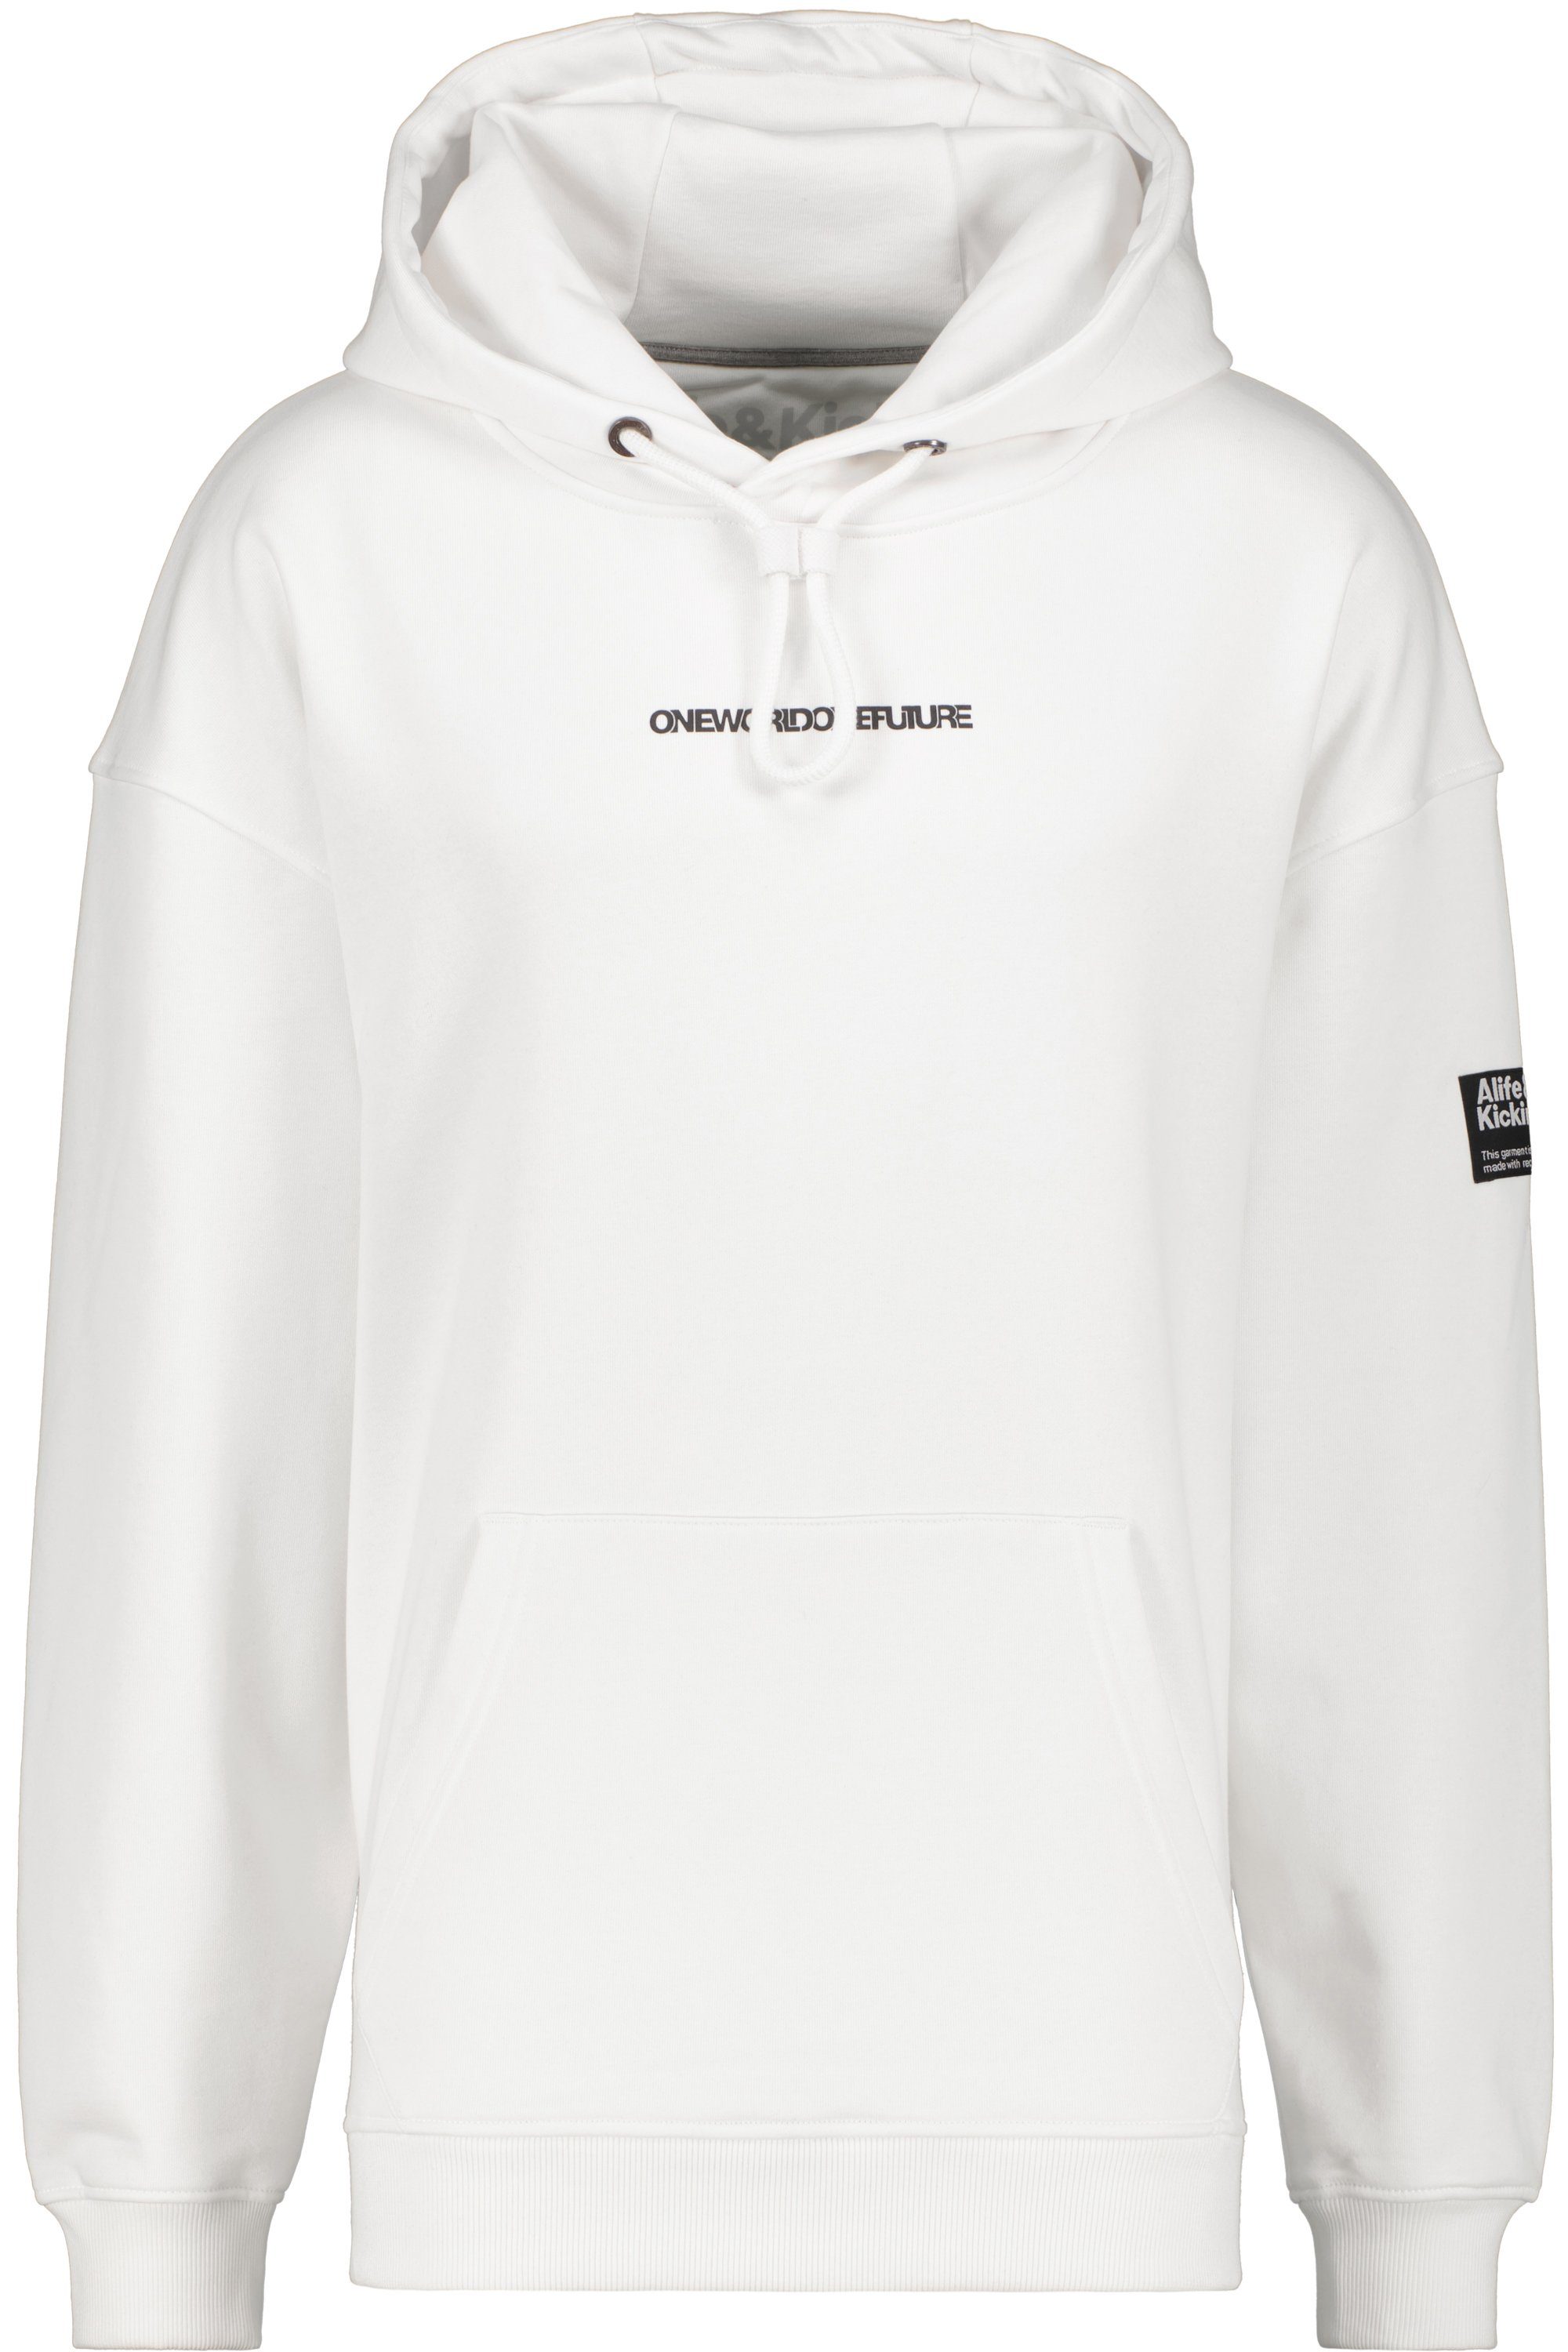 Alife & Kickin Kapuzensweatshirt YannisAK Herren Kapuzensweatshirt, Sweatshirt Sweat white